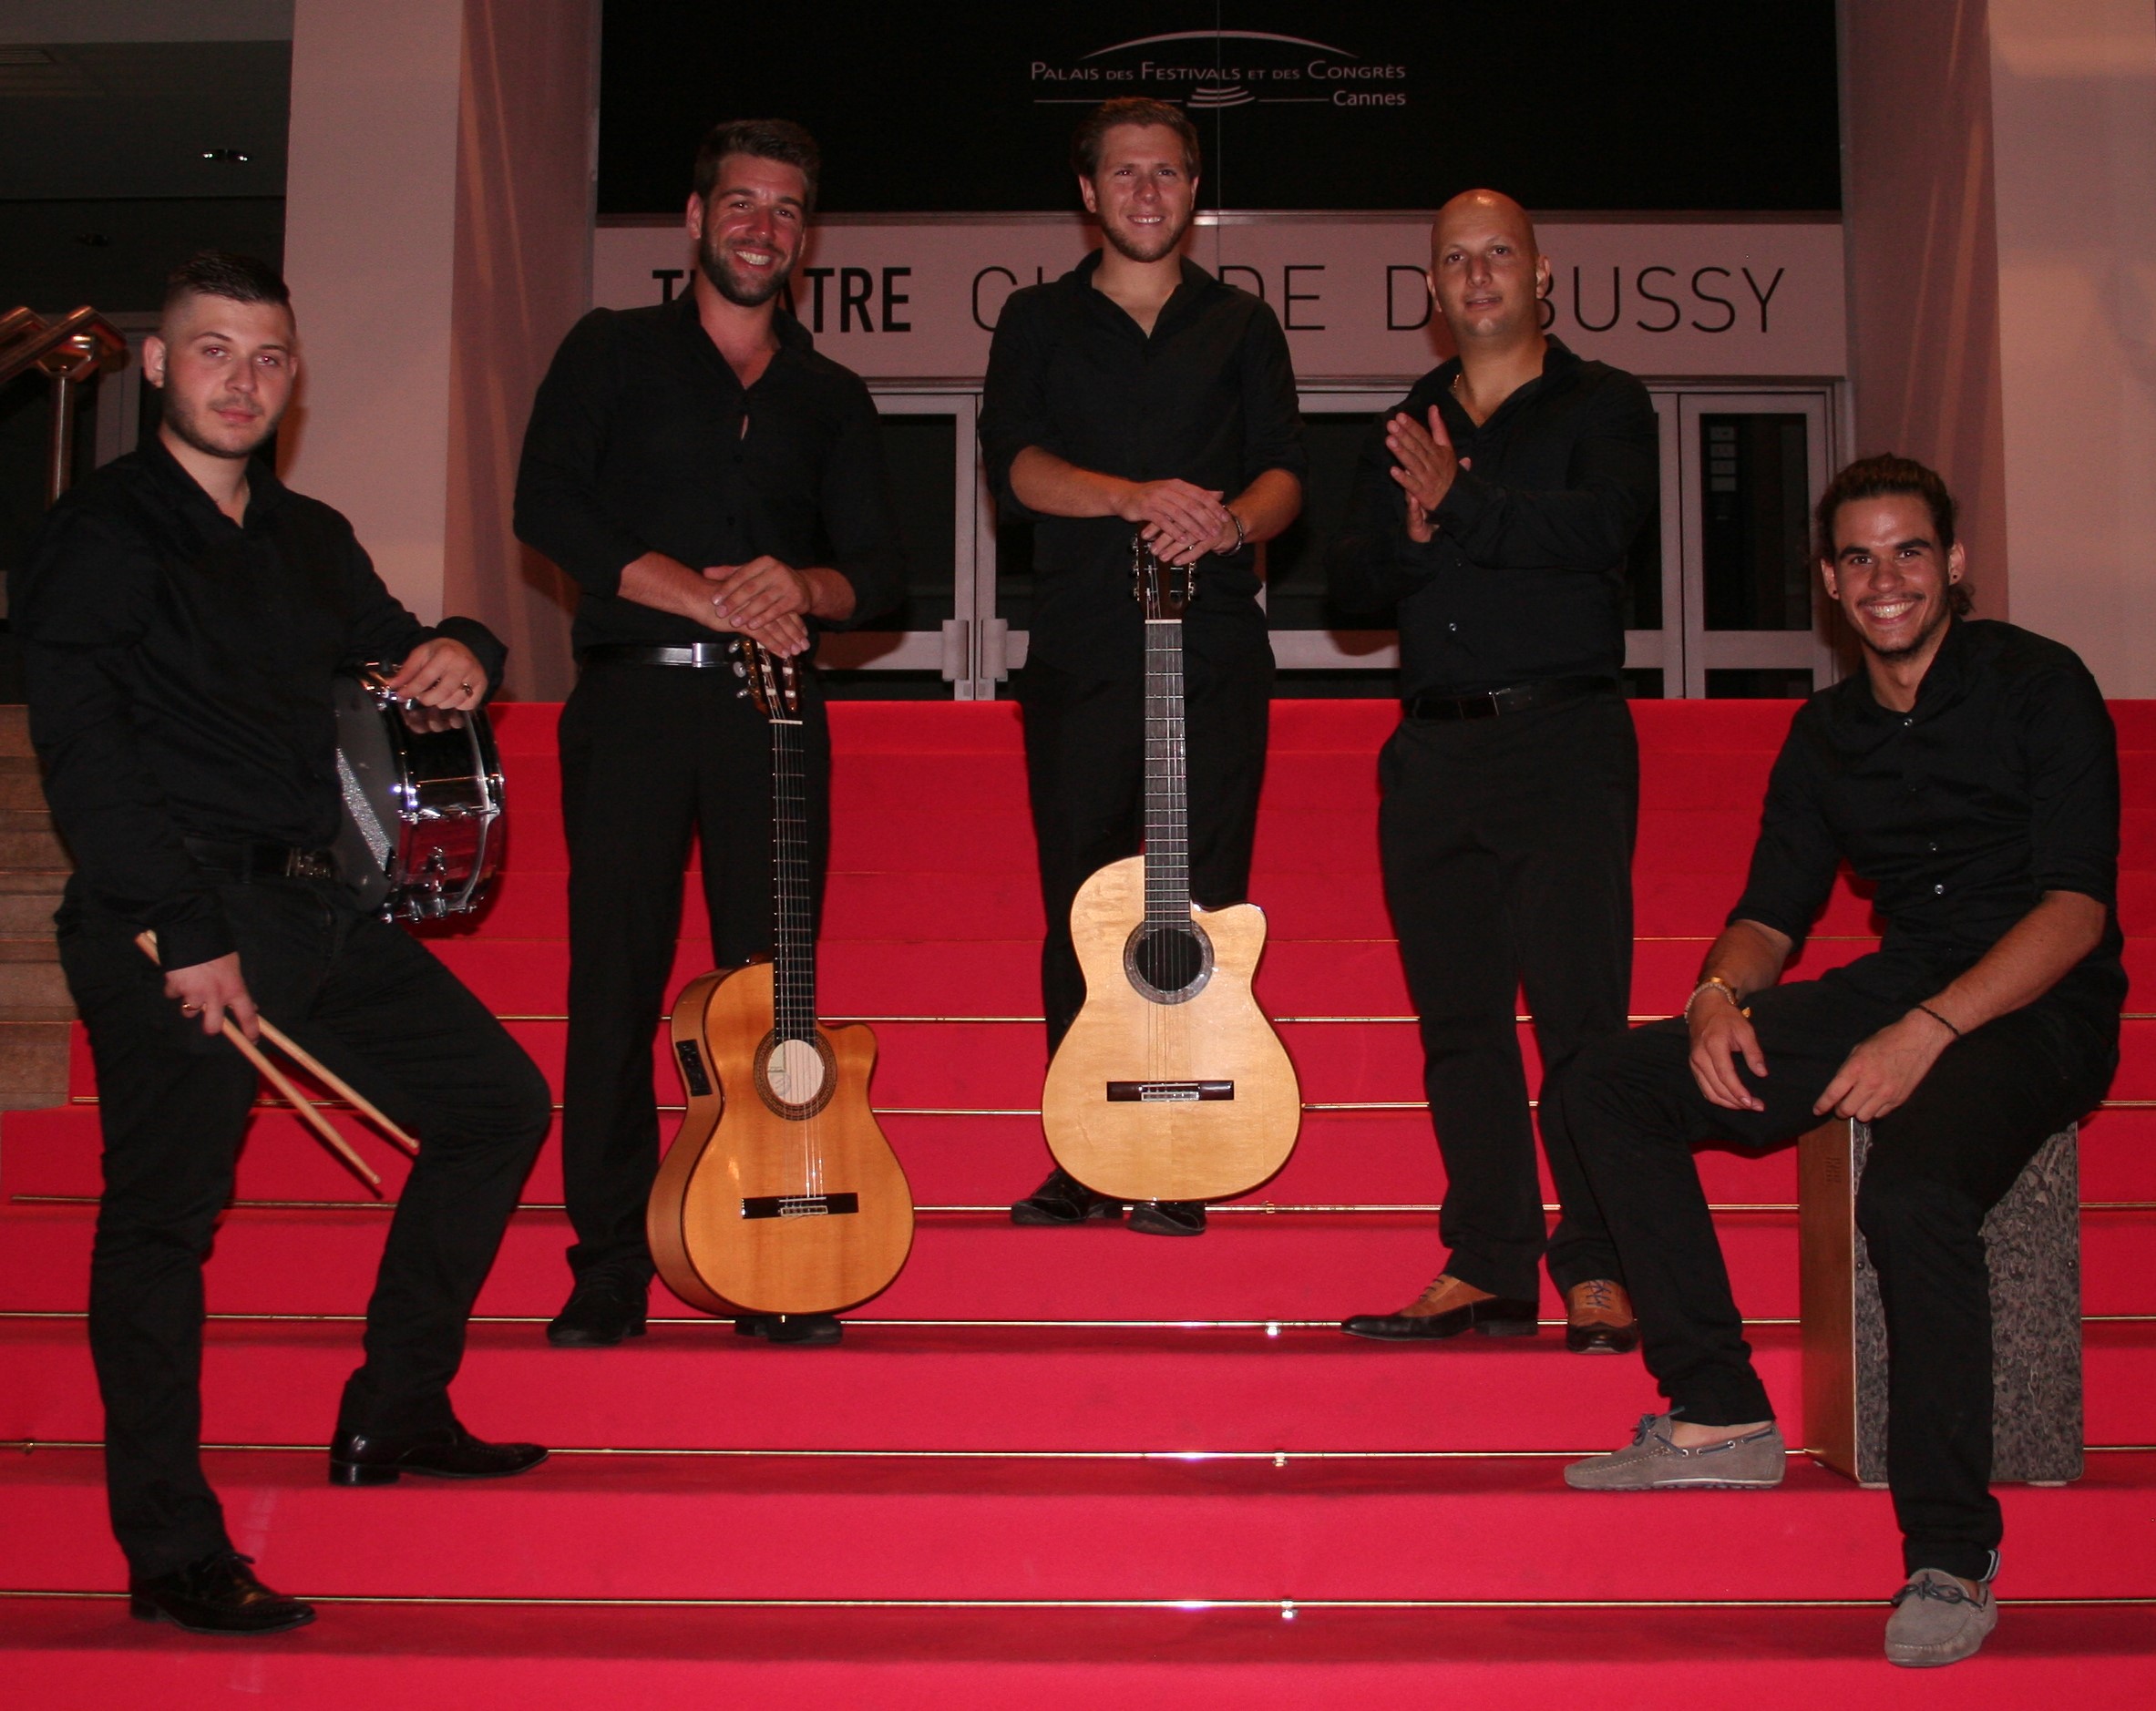 Chanteur orchestre mariage, soirée privée, soirée entreprise
Gipsy Rumba Flamenco Sevillane